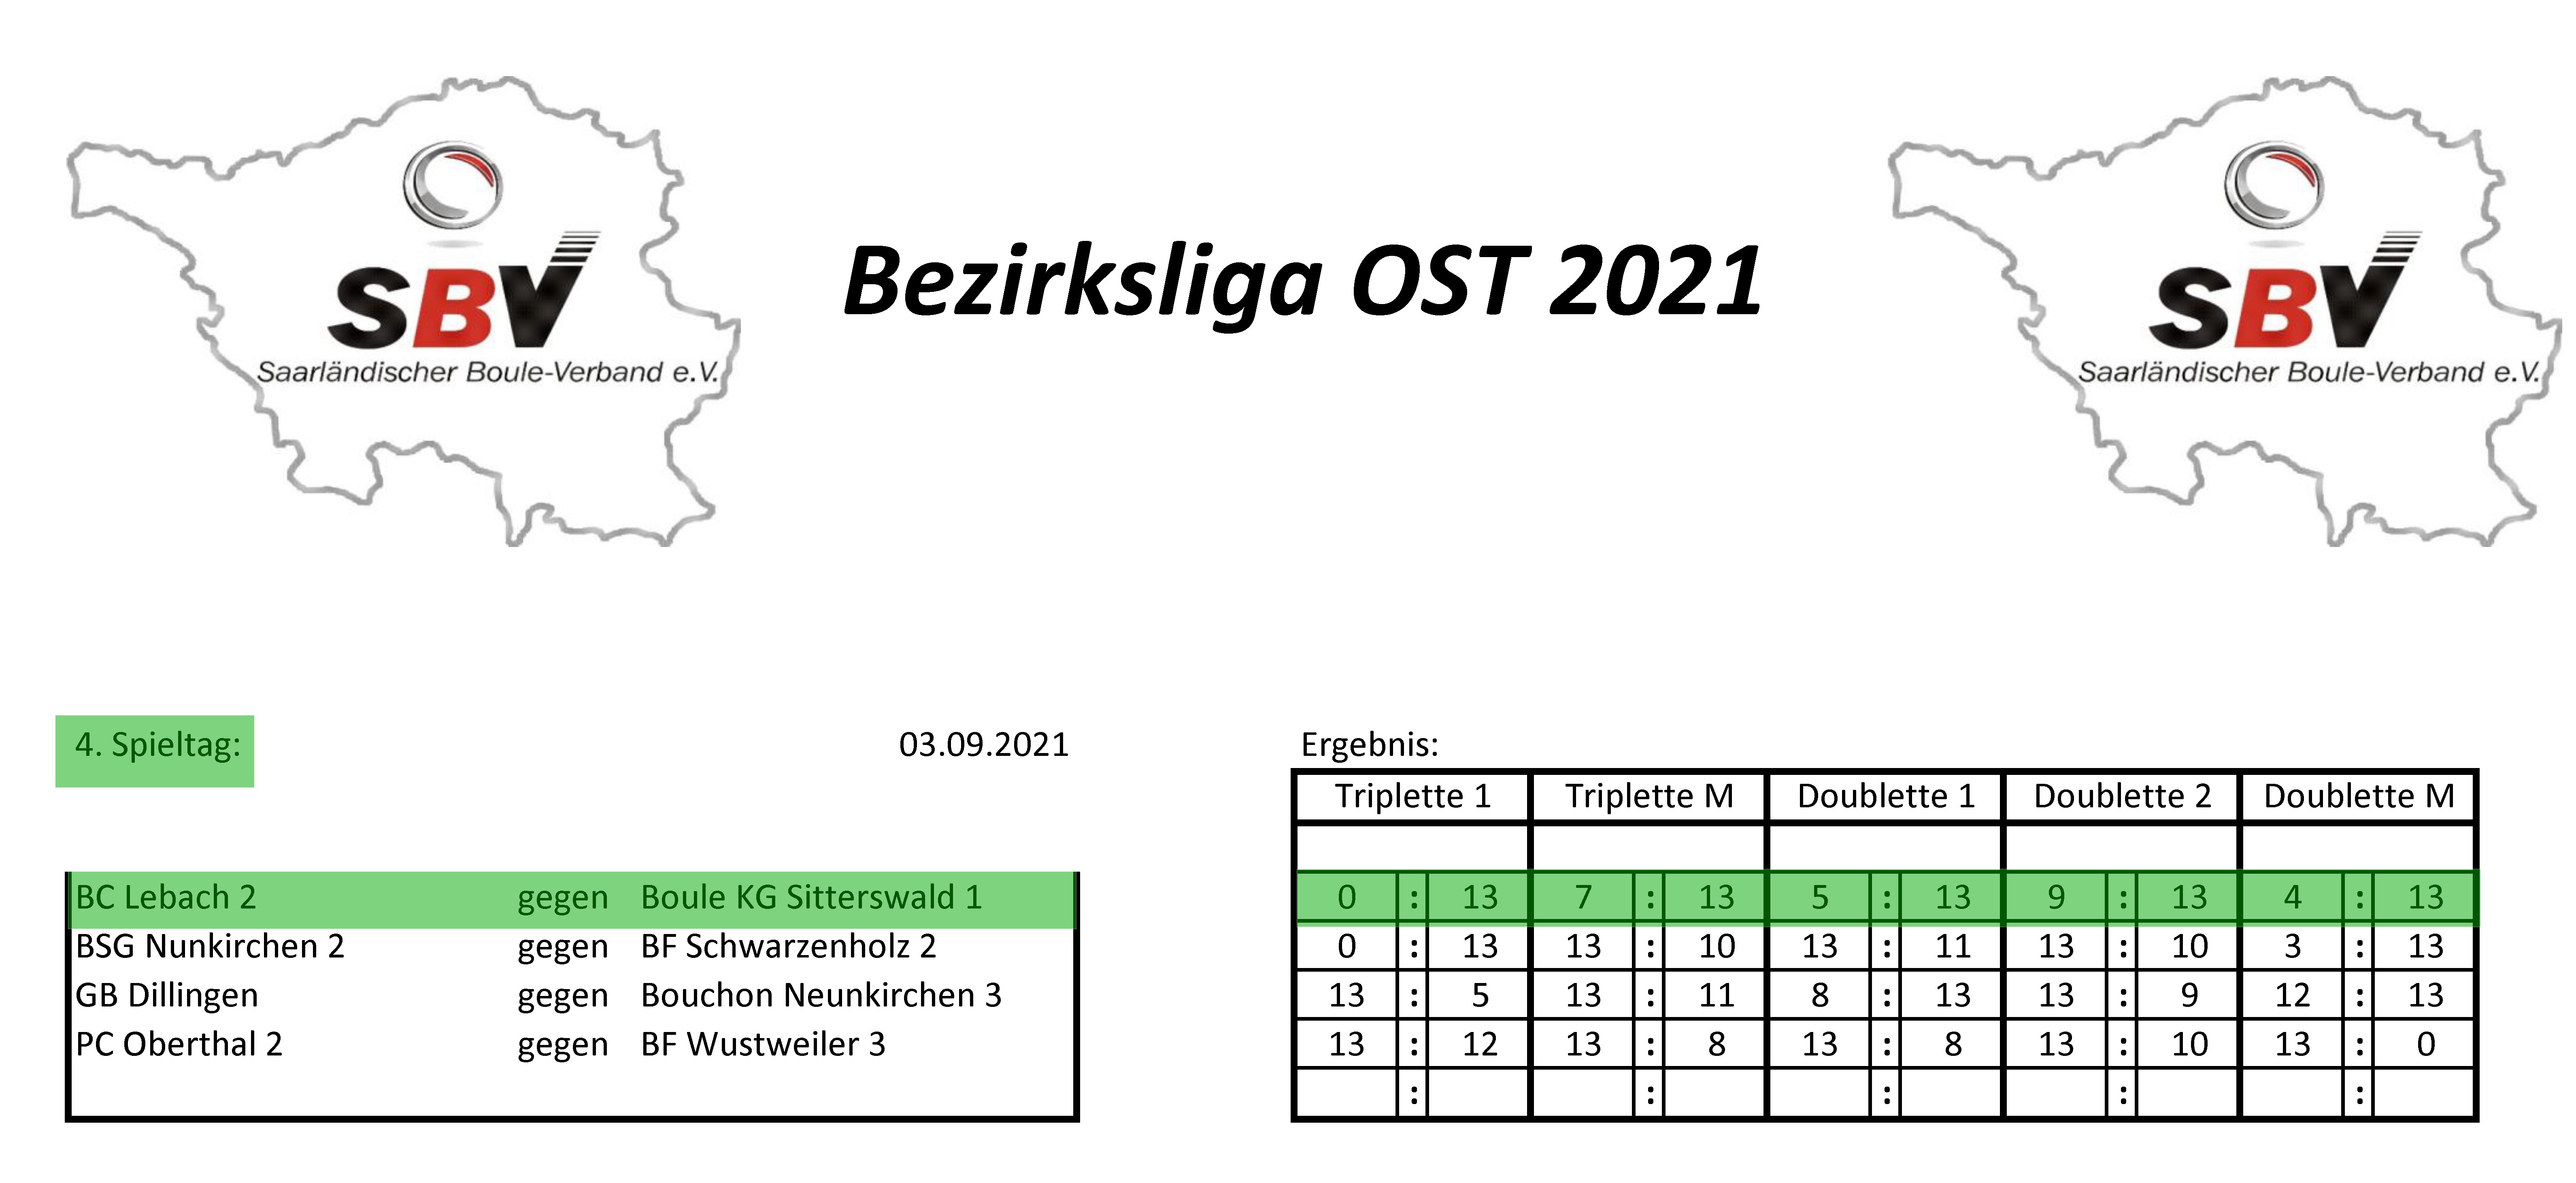 SBV Bezirksliga Ost 2021 Ergebnisse 4 Spieltag